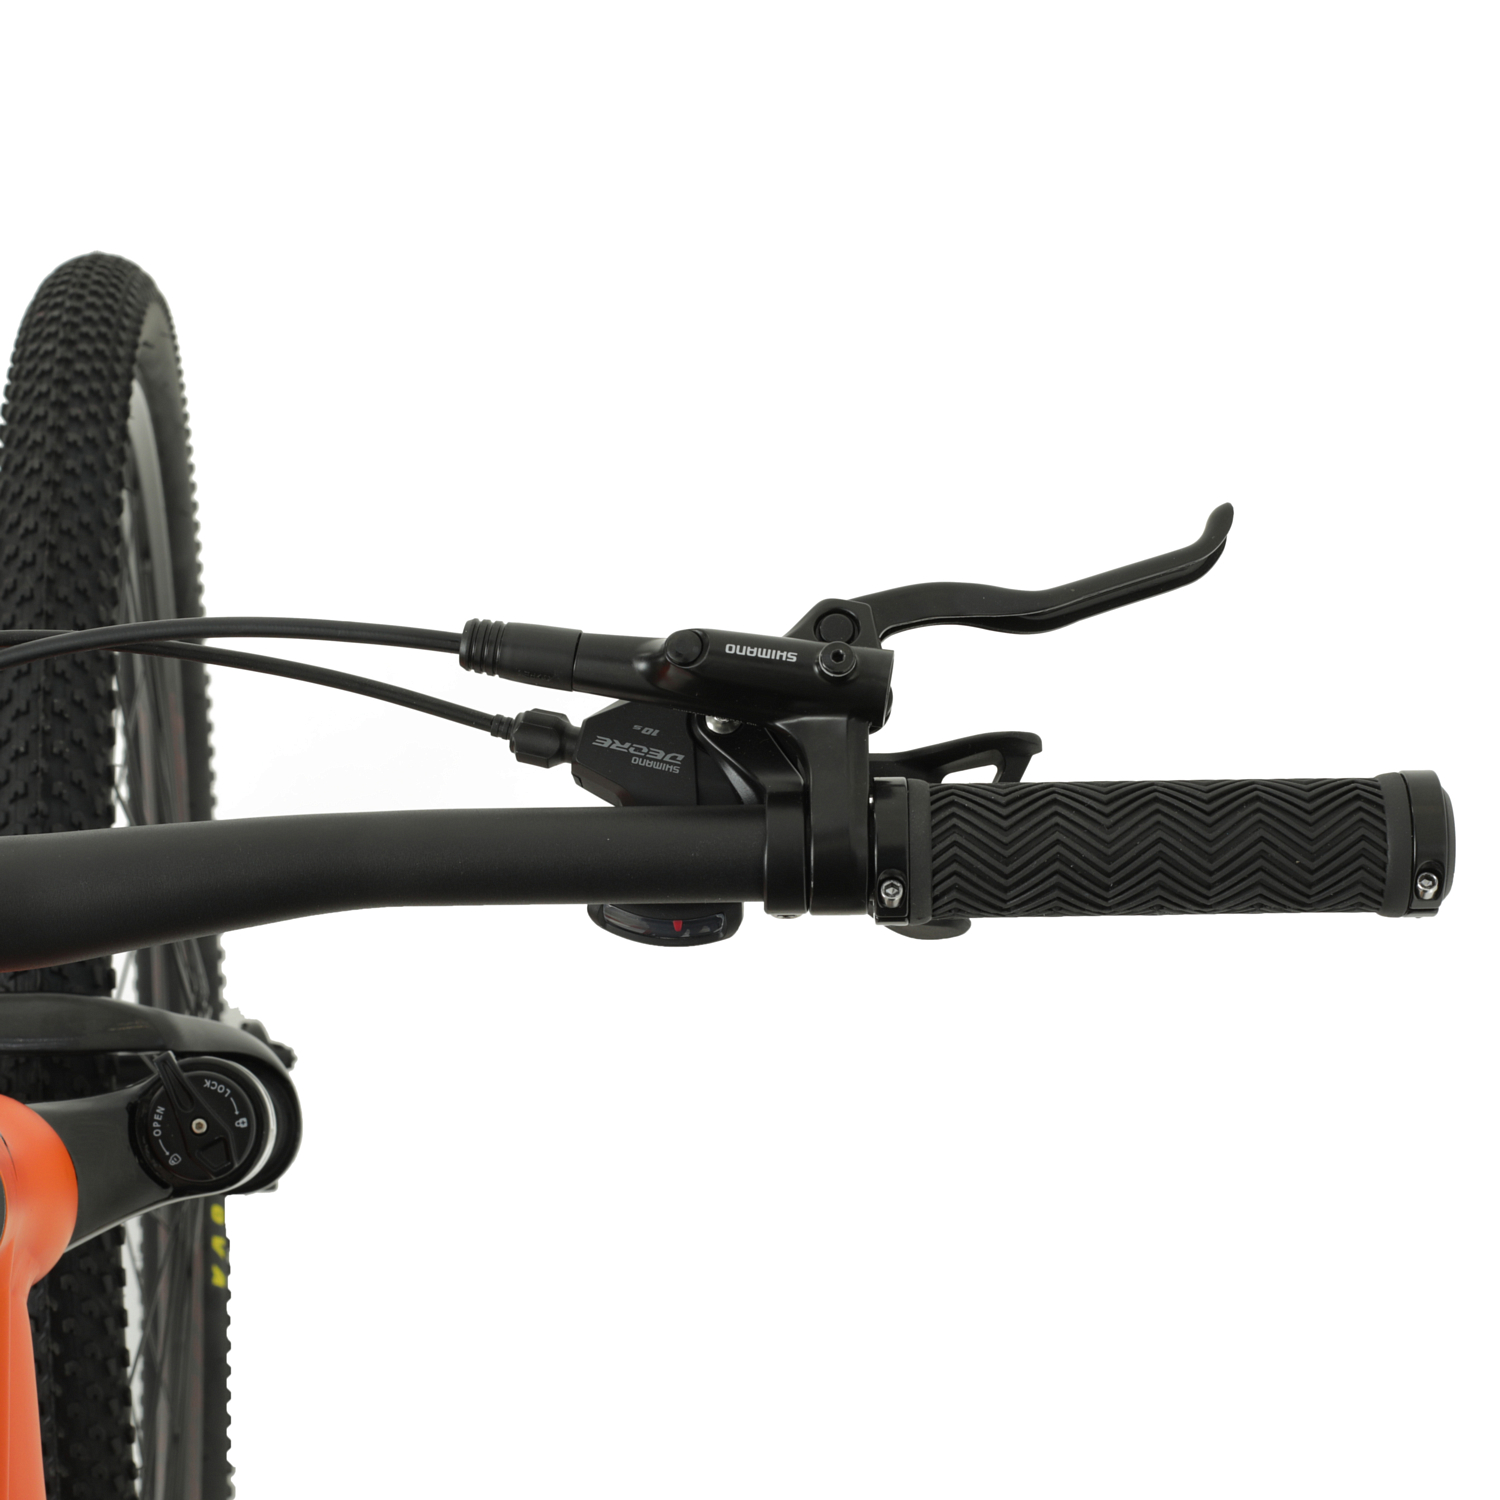 Велосипед Welt Ranger 2.0 29 2023 Orange